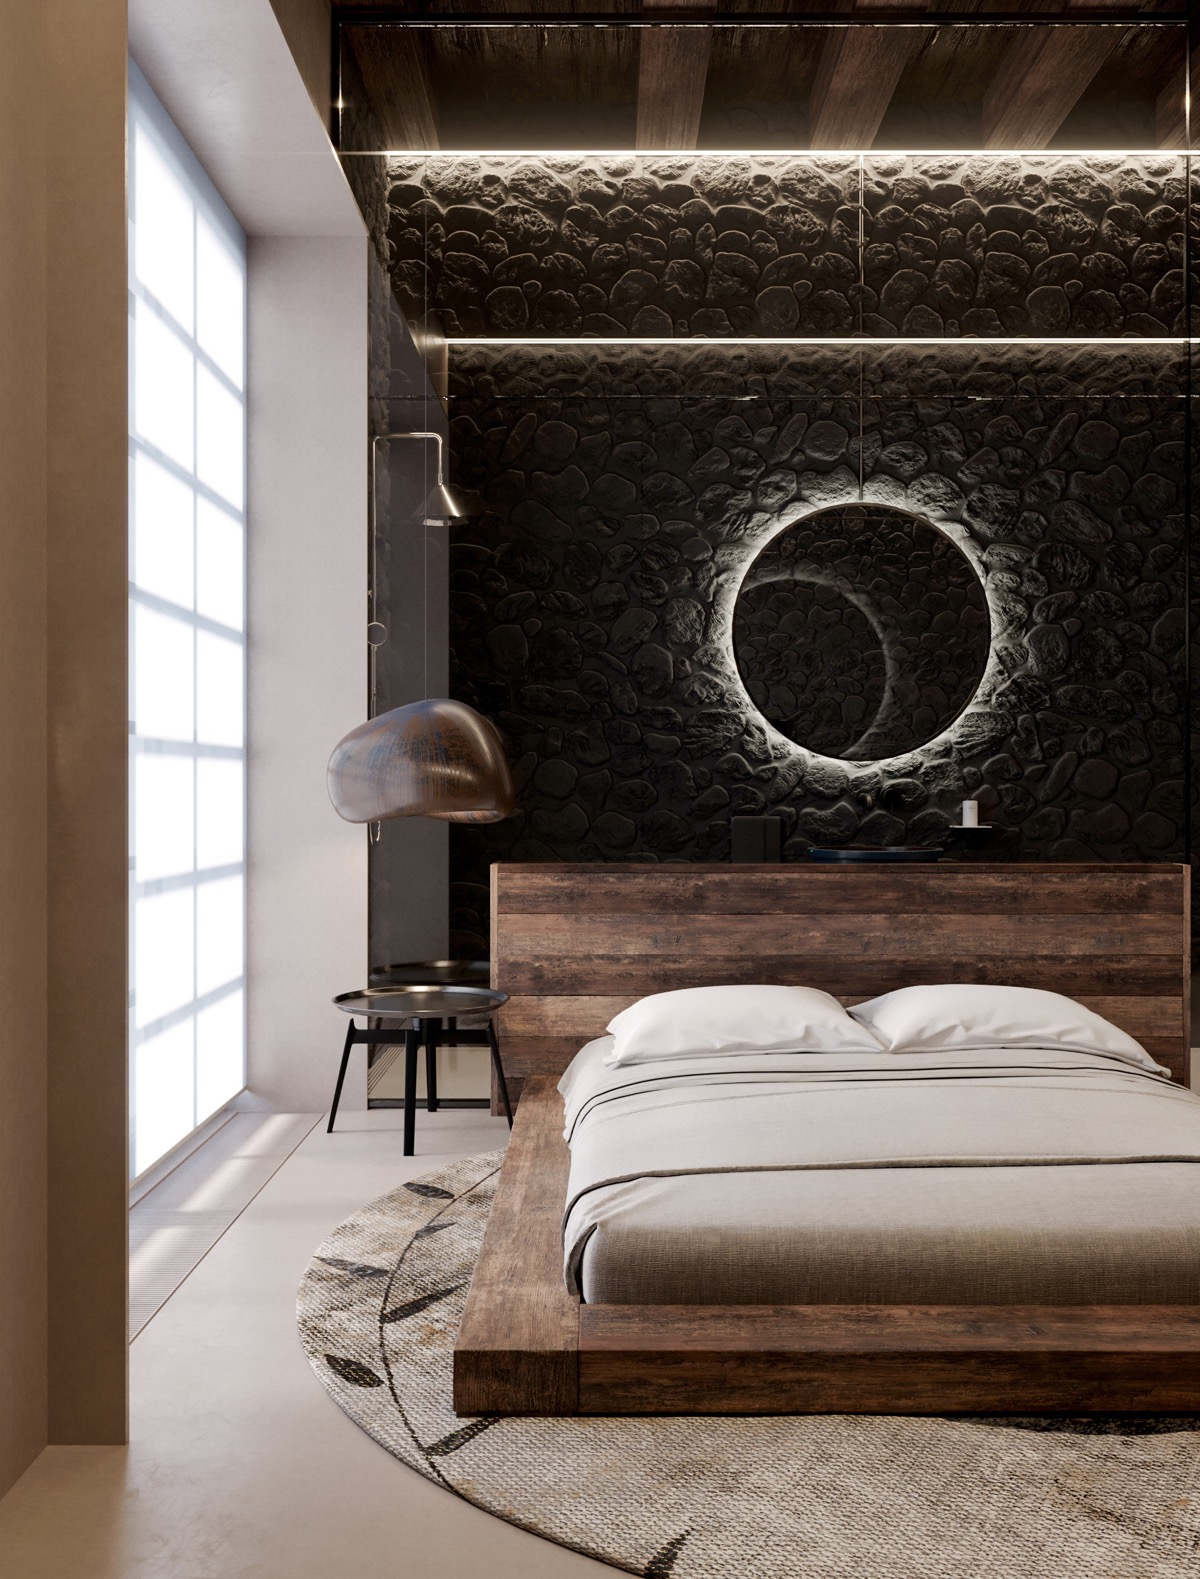 Luxury master bedroom ideas - design trends 2020 — Aluminr ...